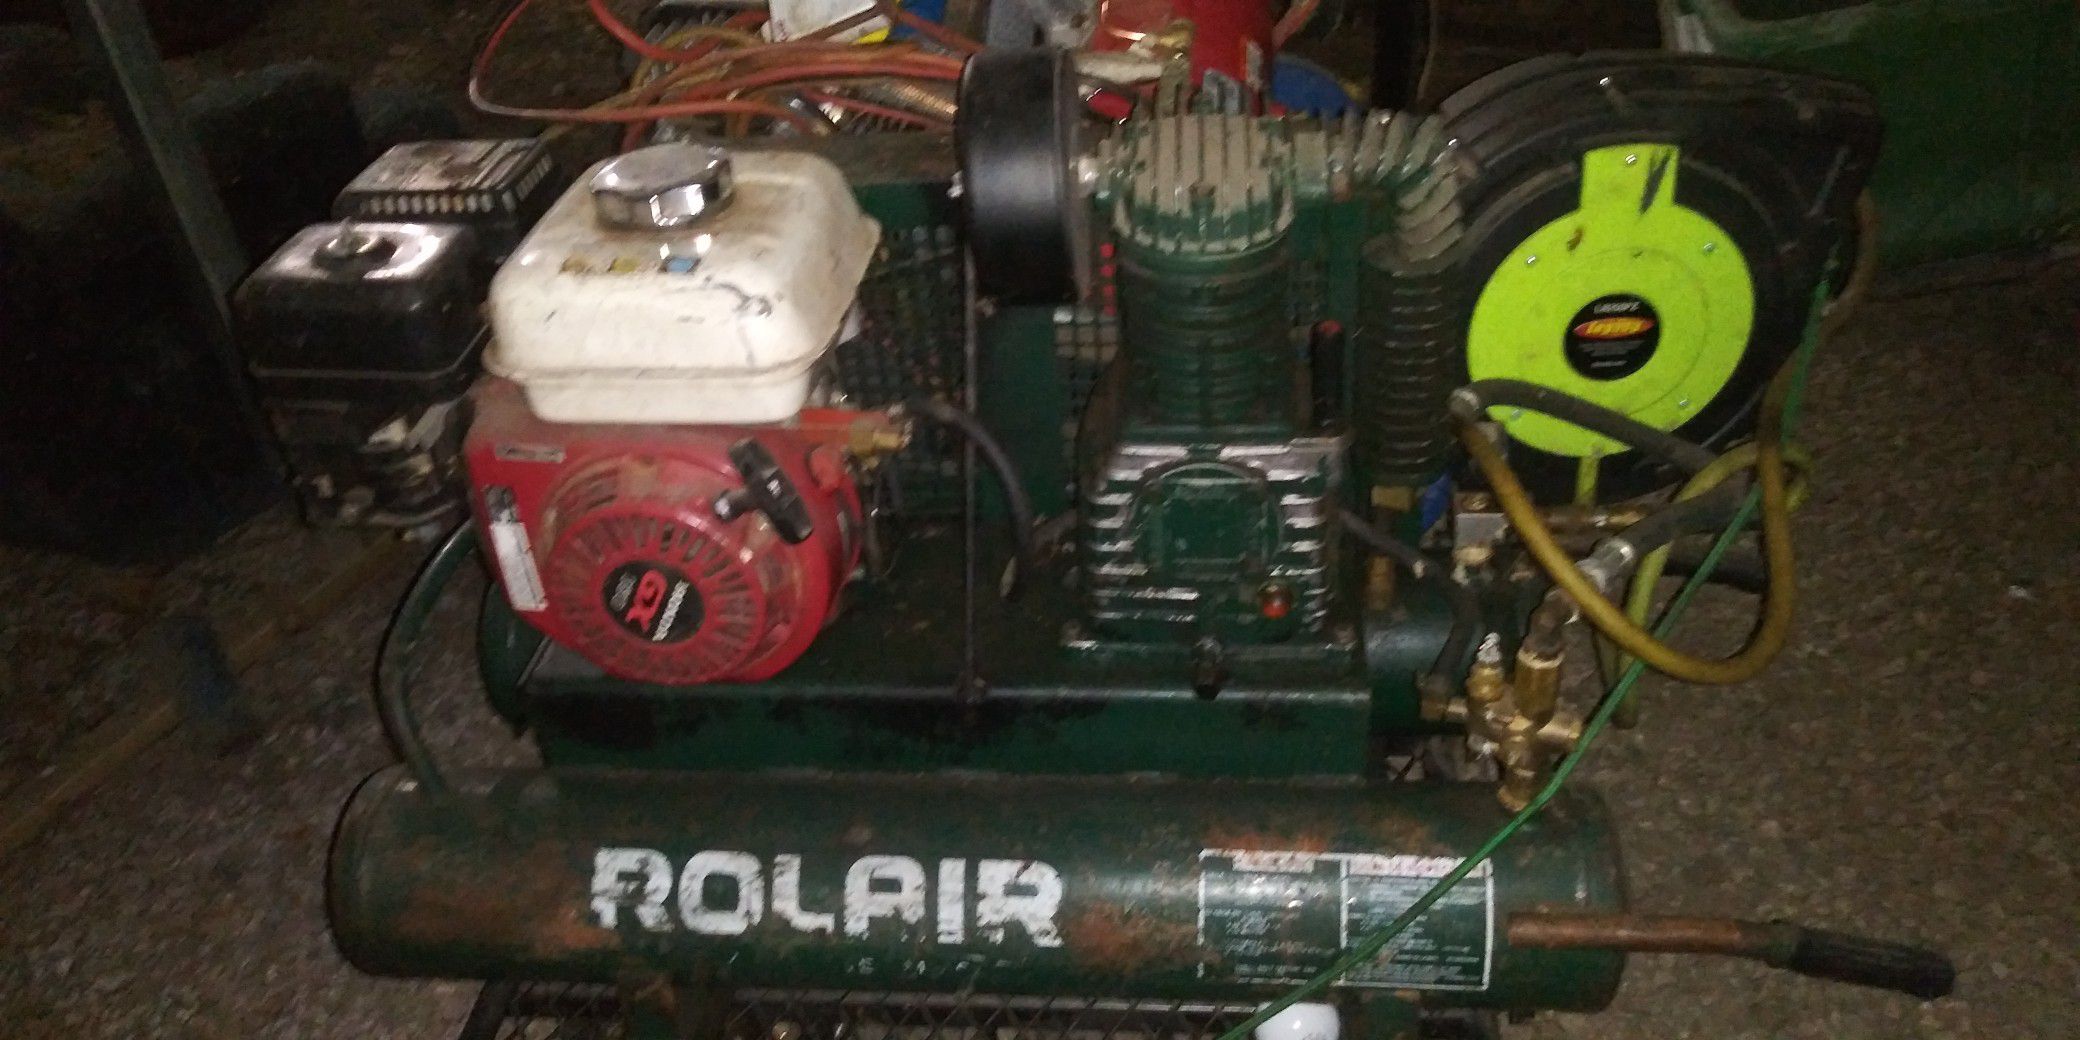 Gas powered air compressor with hose $140